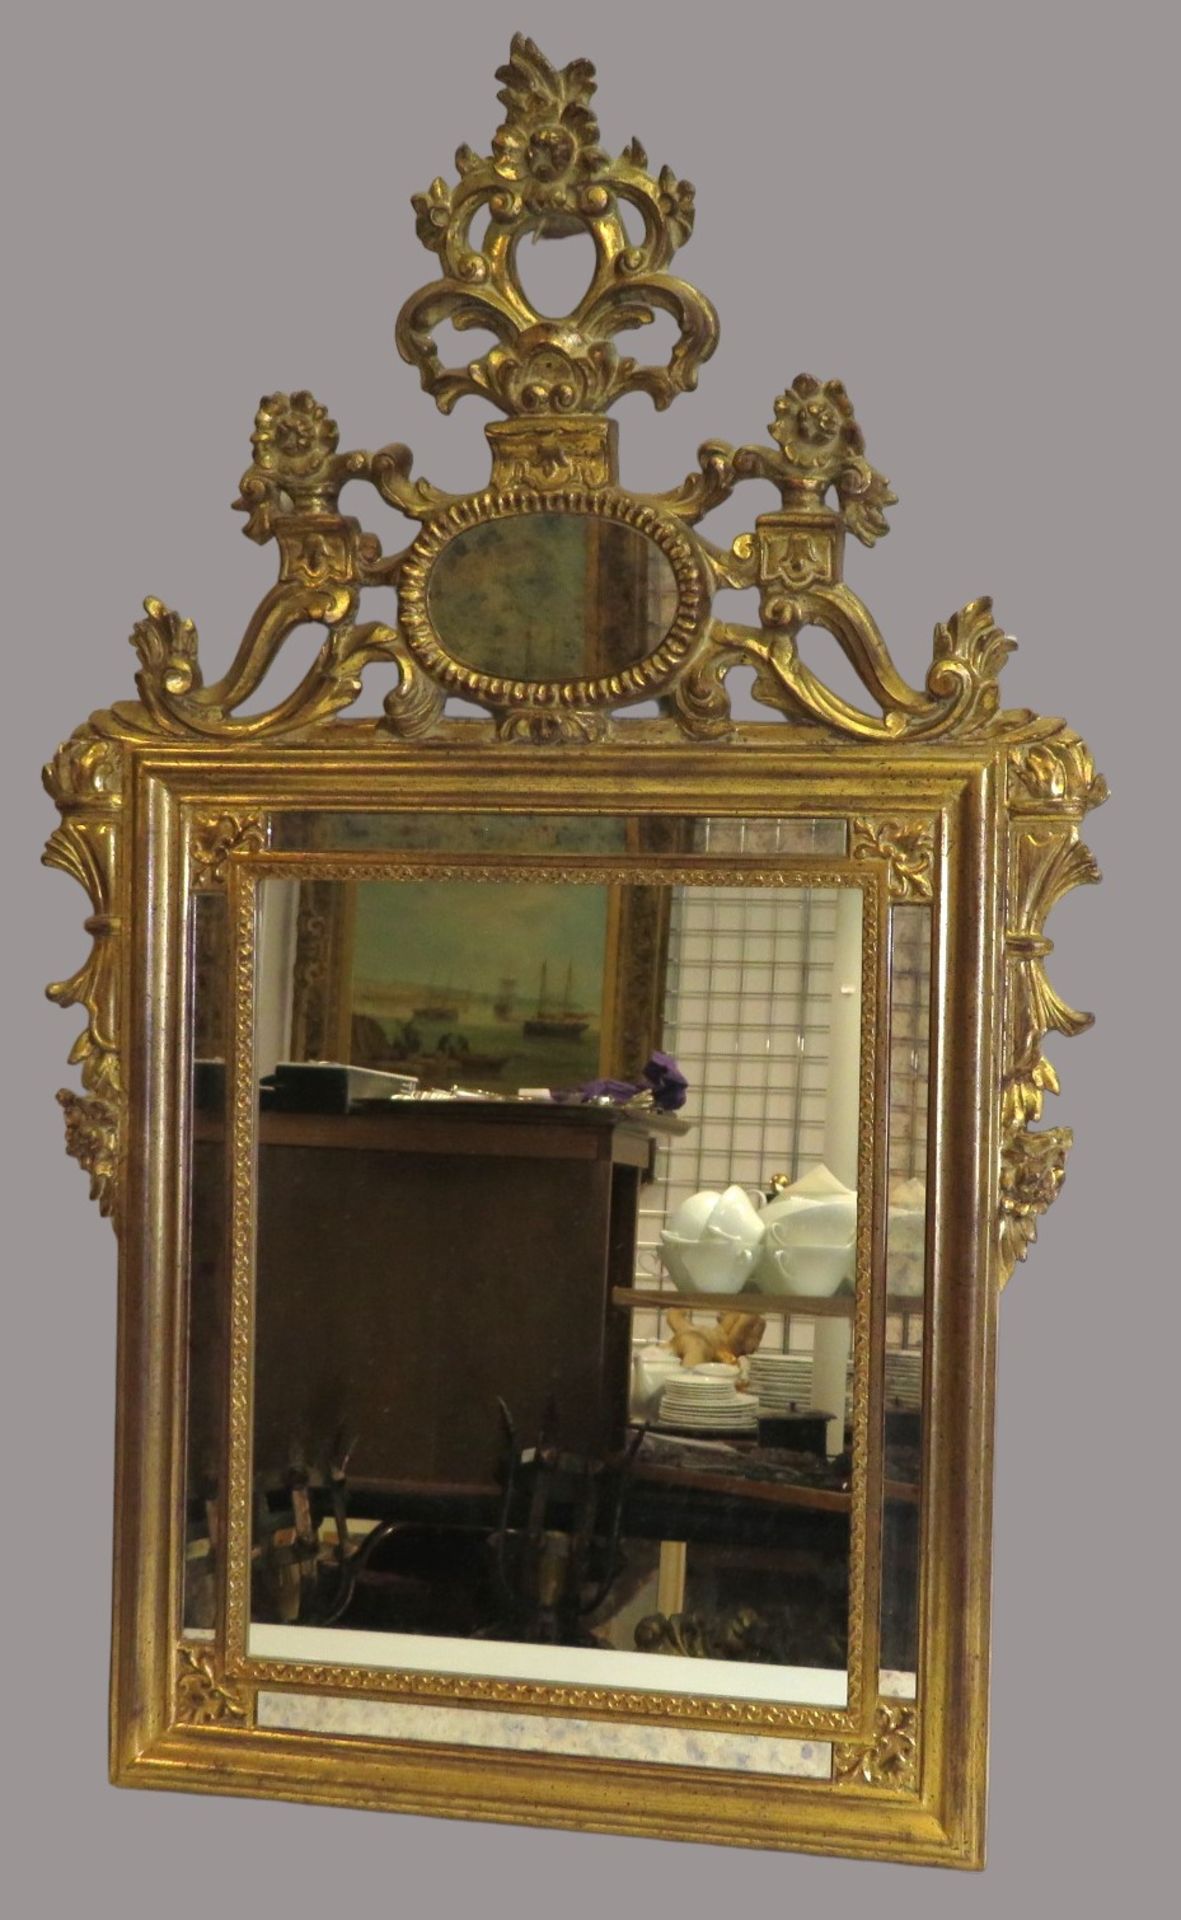 Spiegel, 1. Hälfte 20. Jahrhundert, Holz geschnitzt, vergoldet, teils durchbrochen gearbeitet, 87 x